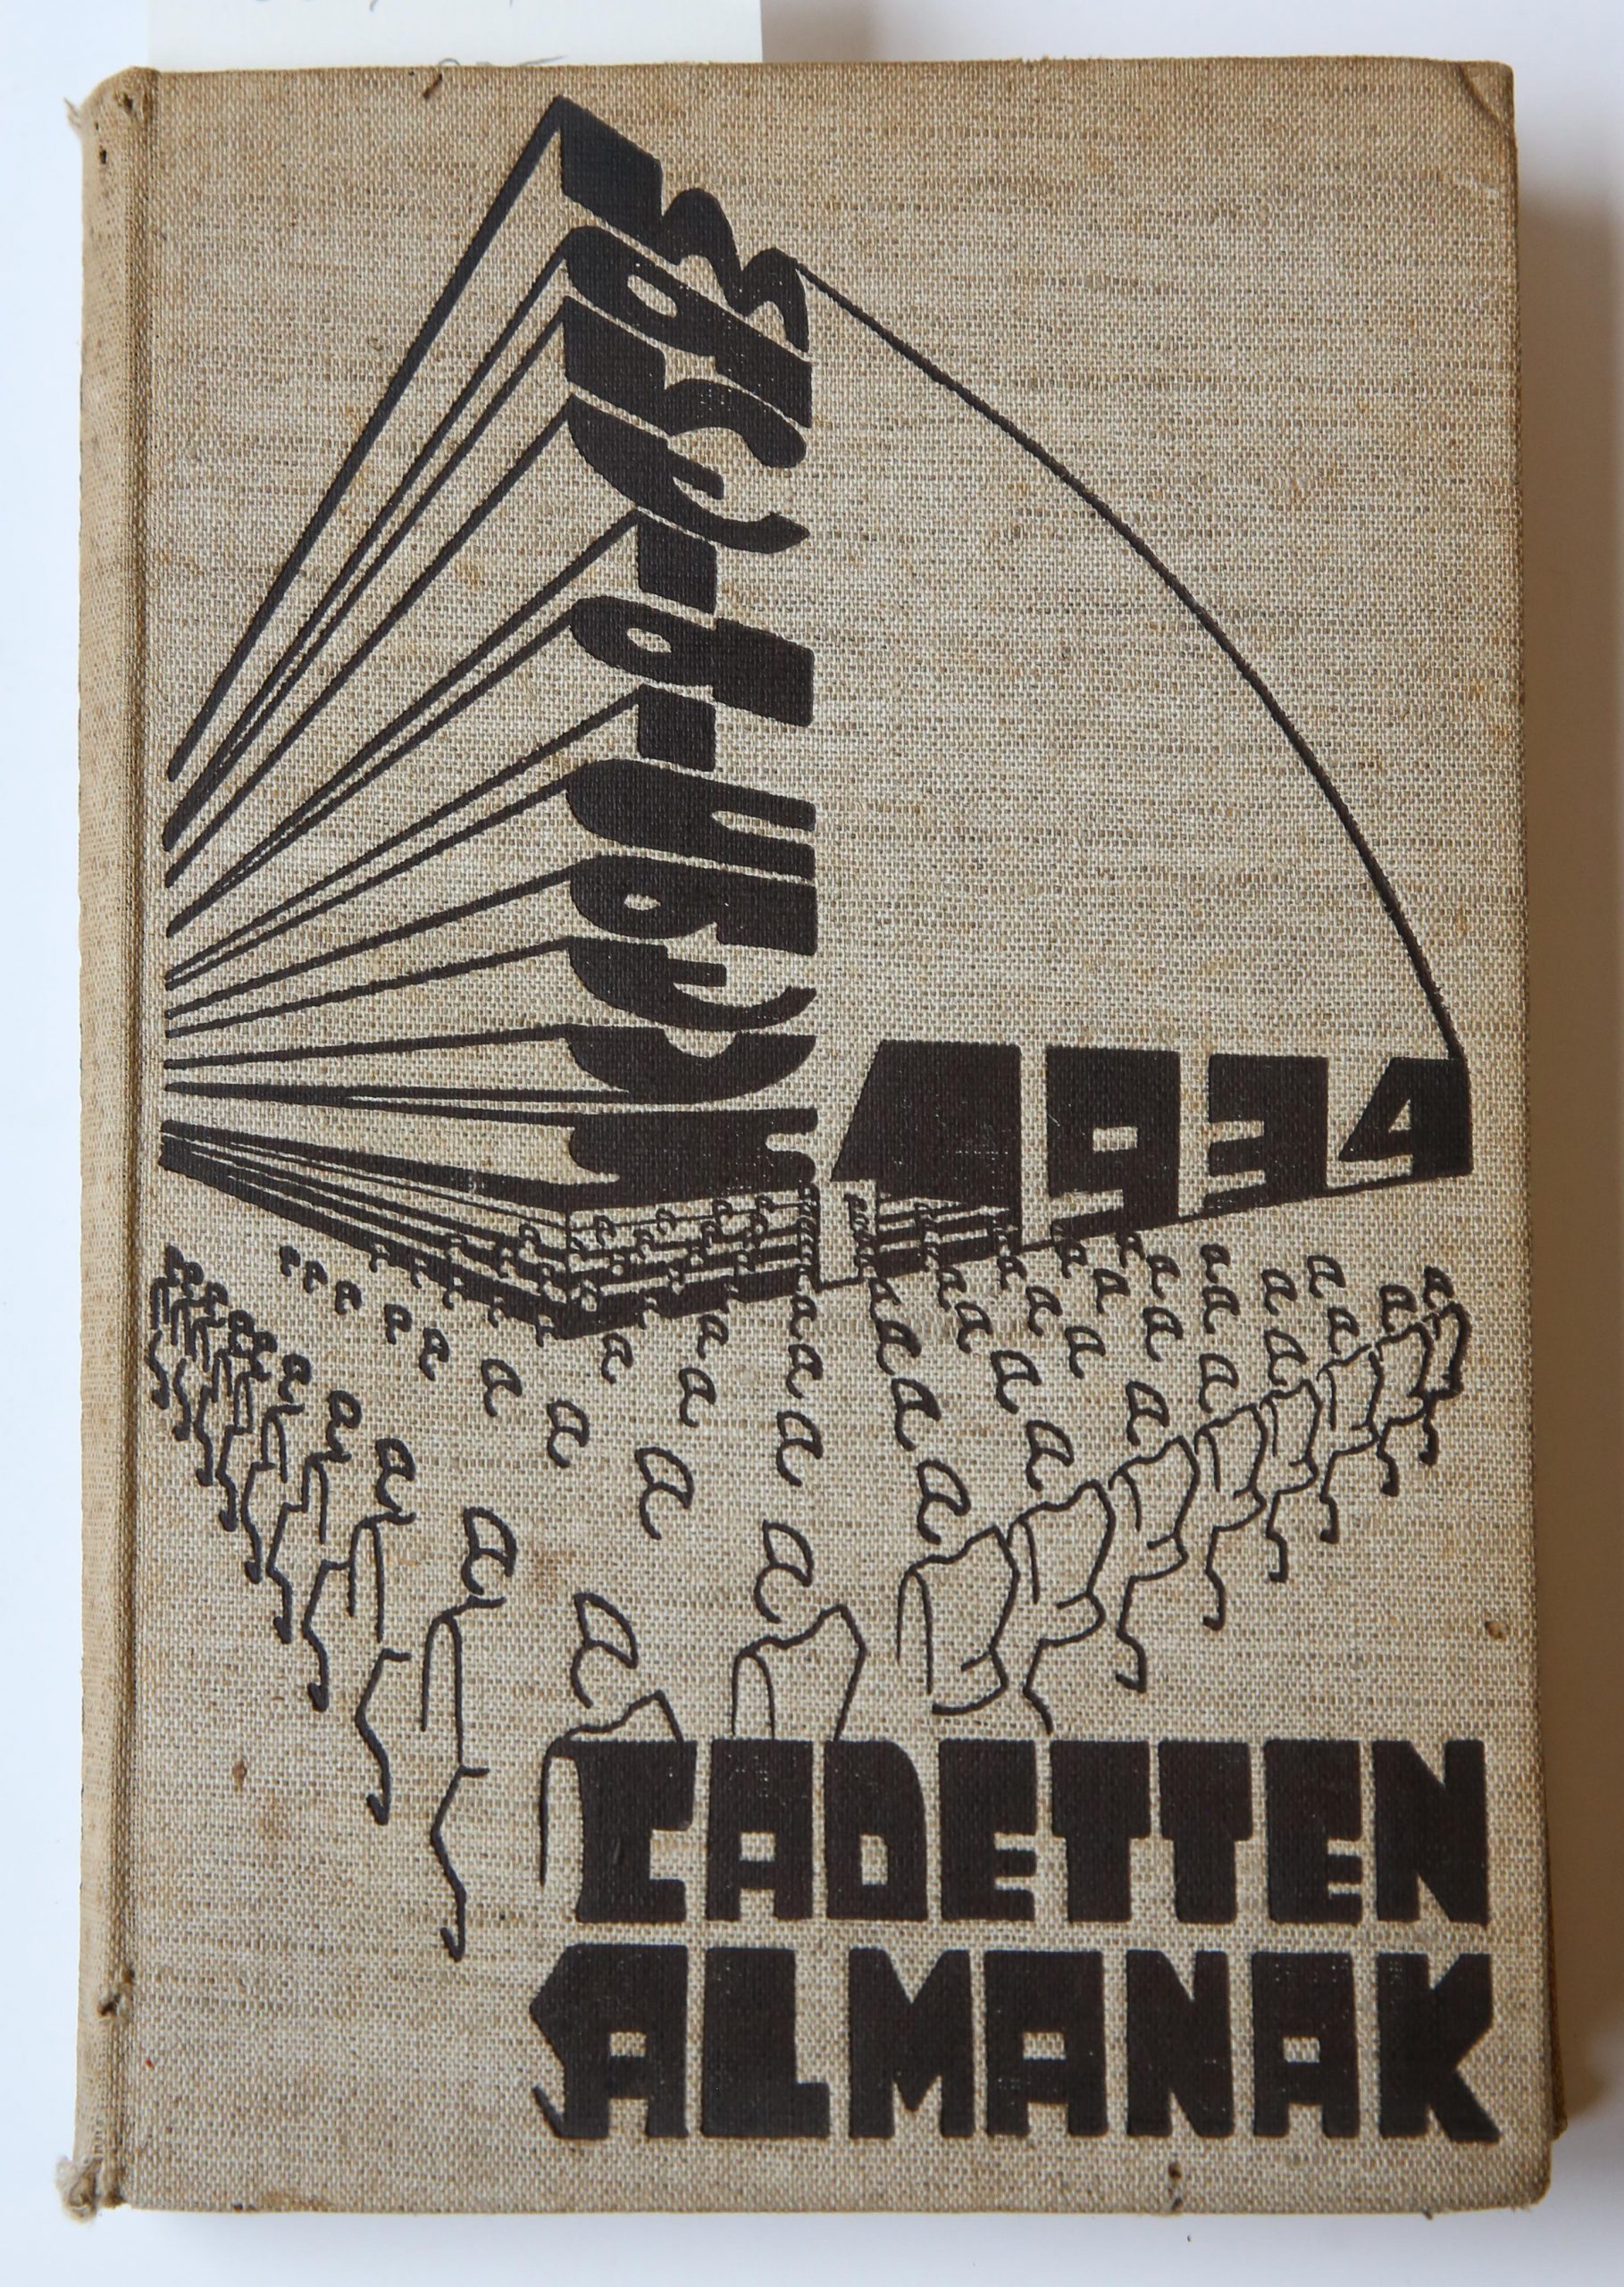 Cadetten Almanak 1934, Jubileumnummer ter gelegenheid van het 105-jarig bestaan der Koninklijke Militaire Academie: Uitgave van het corps Cadetten, 1934, 221 pp. Text in Dutch.